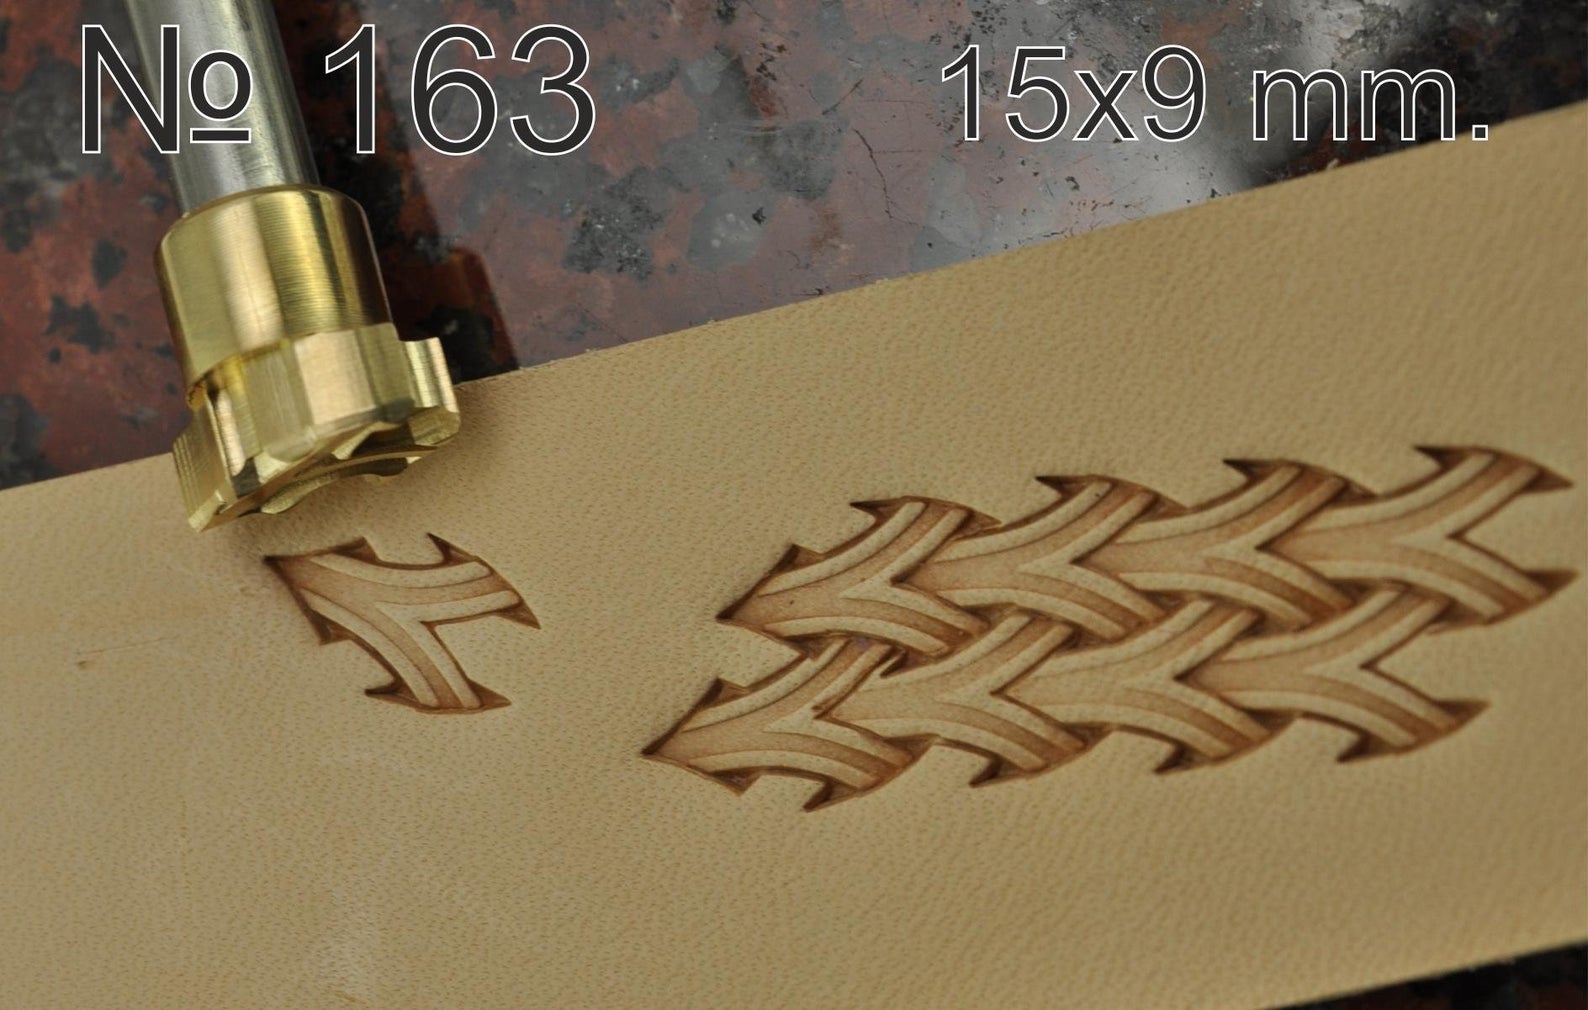 Leather stamp tool #163 - SpasGoranov